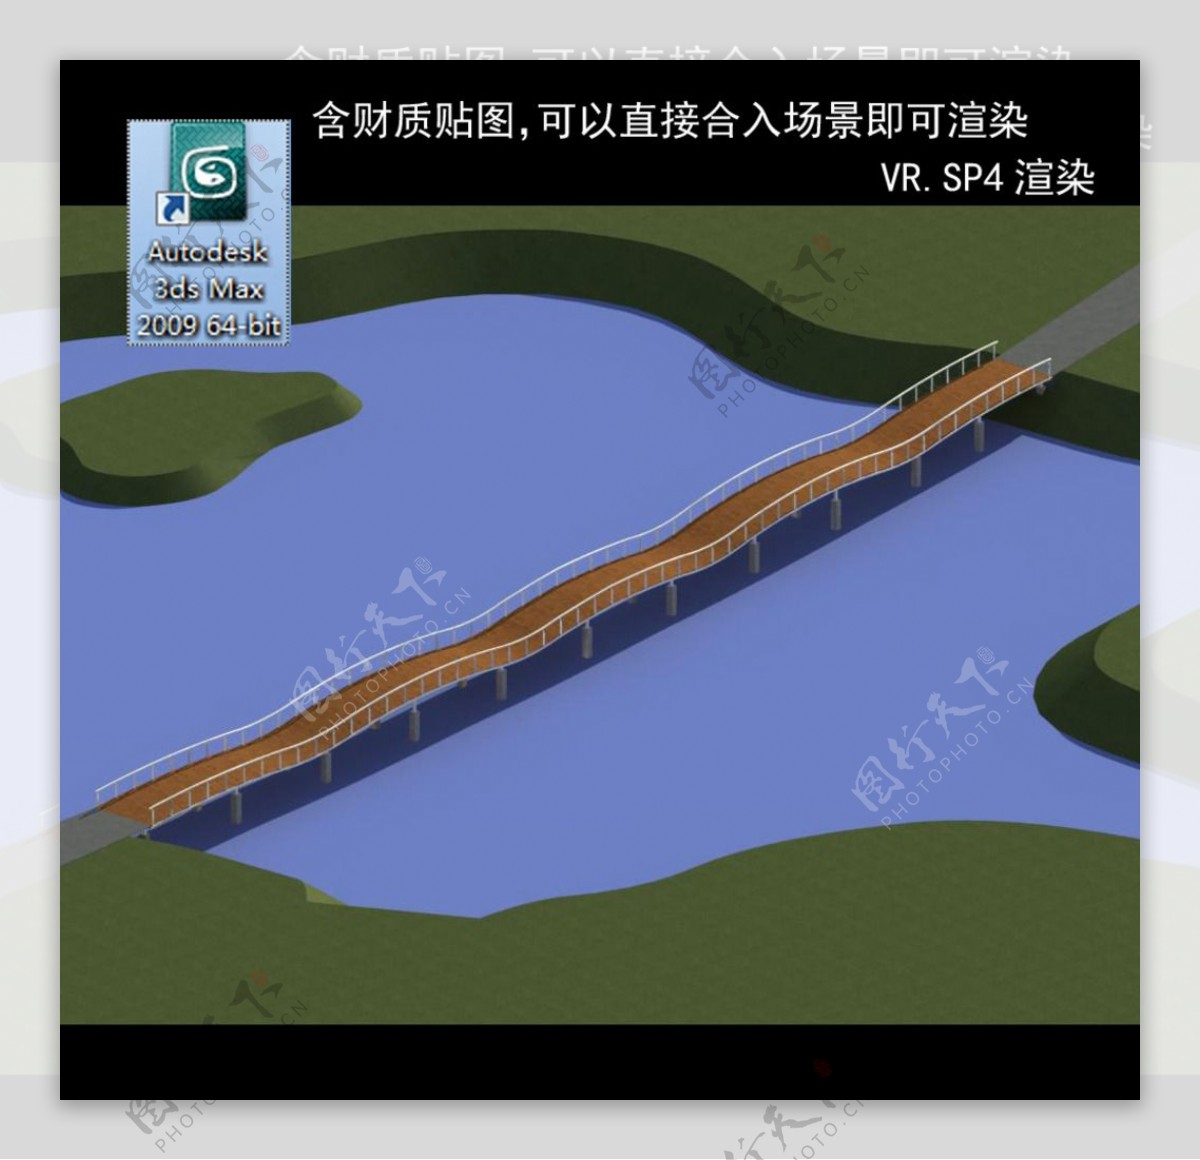 桥拱桥桥模型3D桥模型